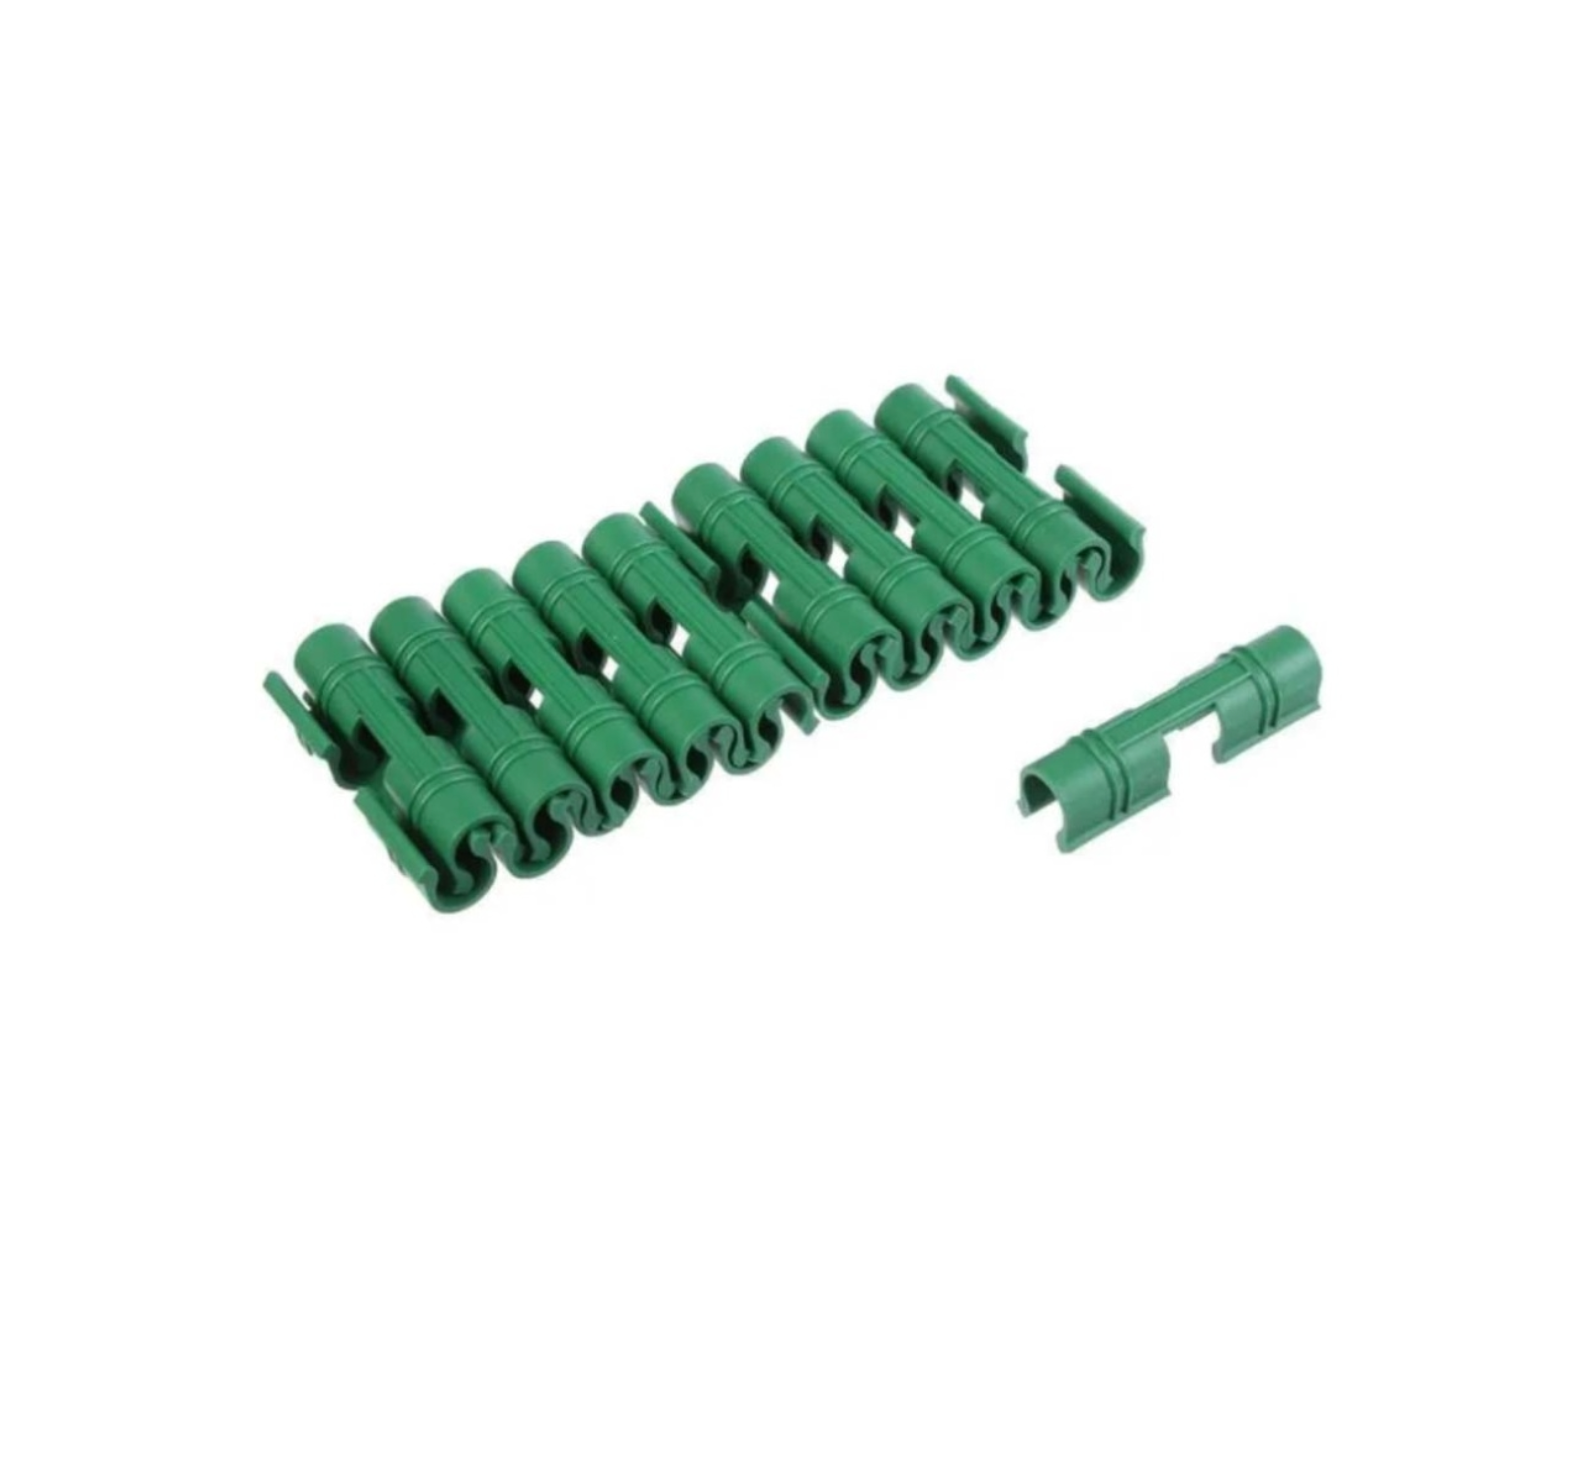 Зажим для крепления укрывного материала (спанбонда и пленки) d 10-12 мм цвет зелёный набор 20 шт.